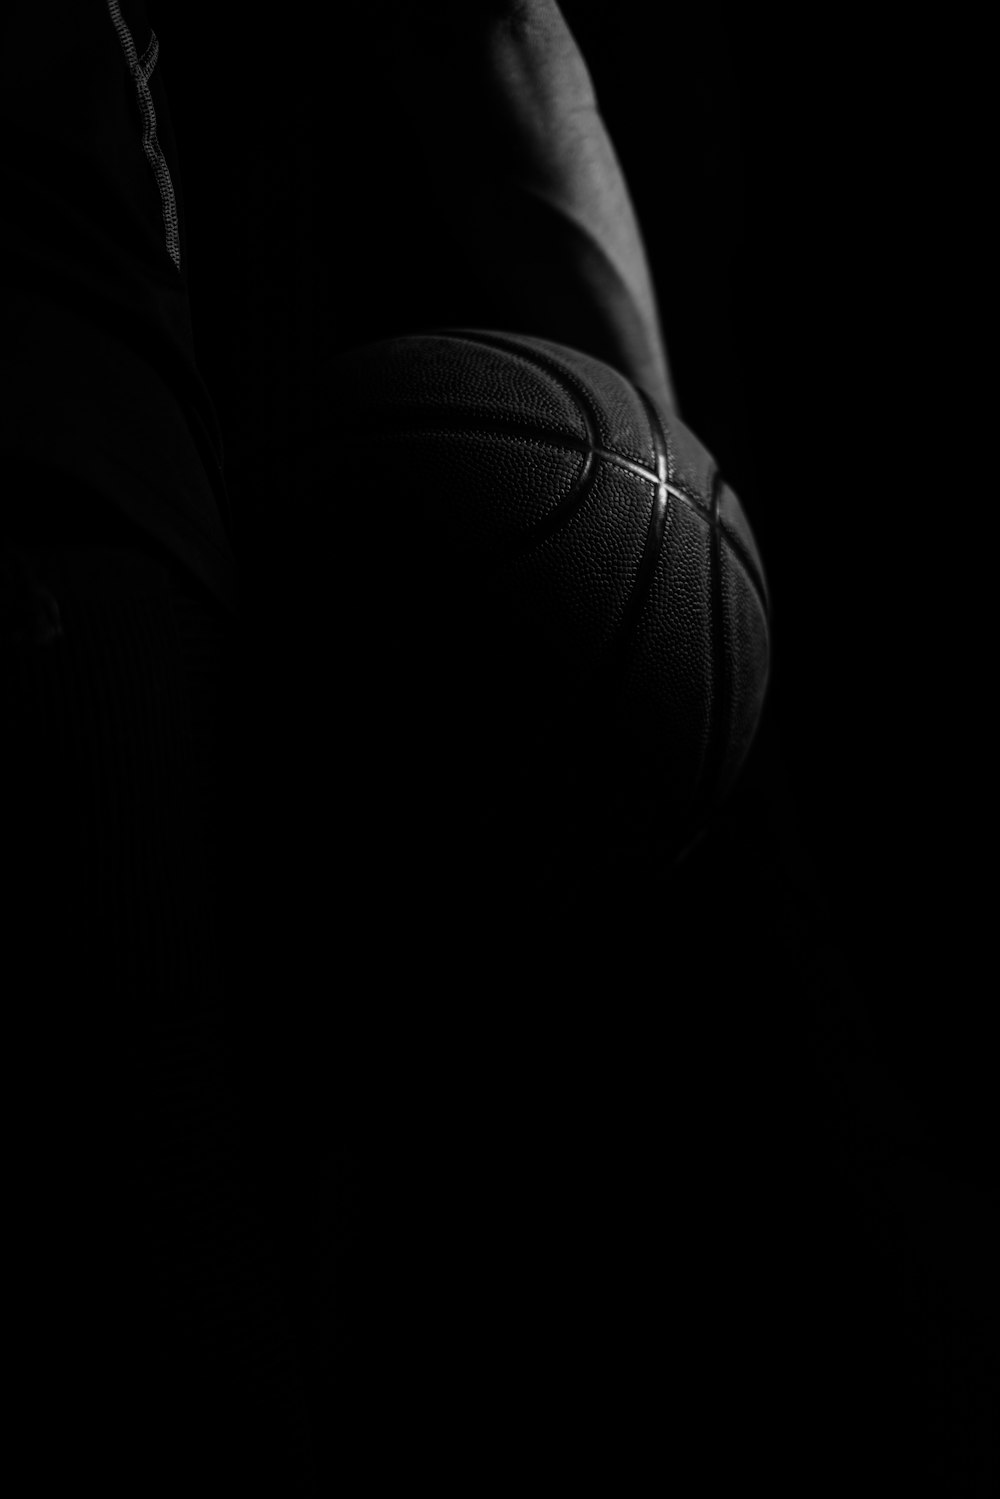 basquete na fotografia em preto e branco